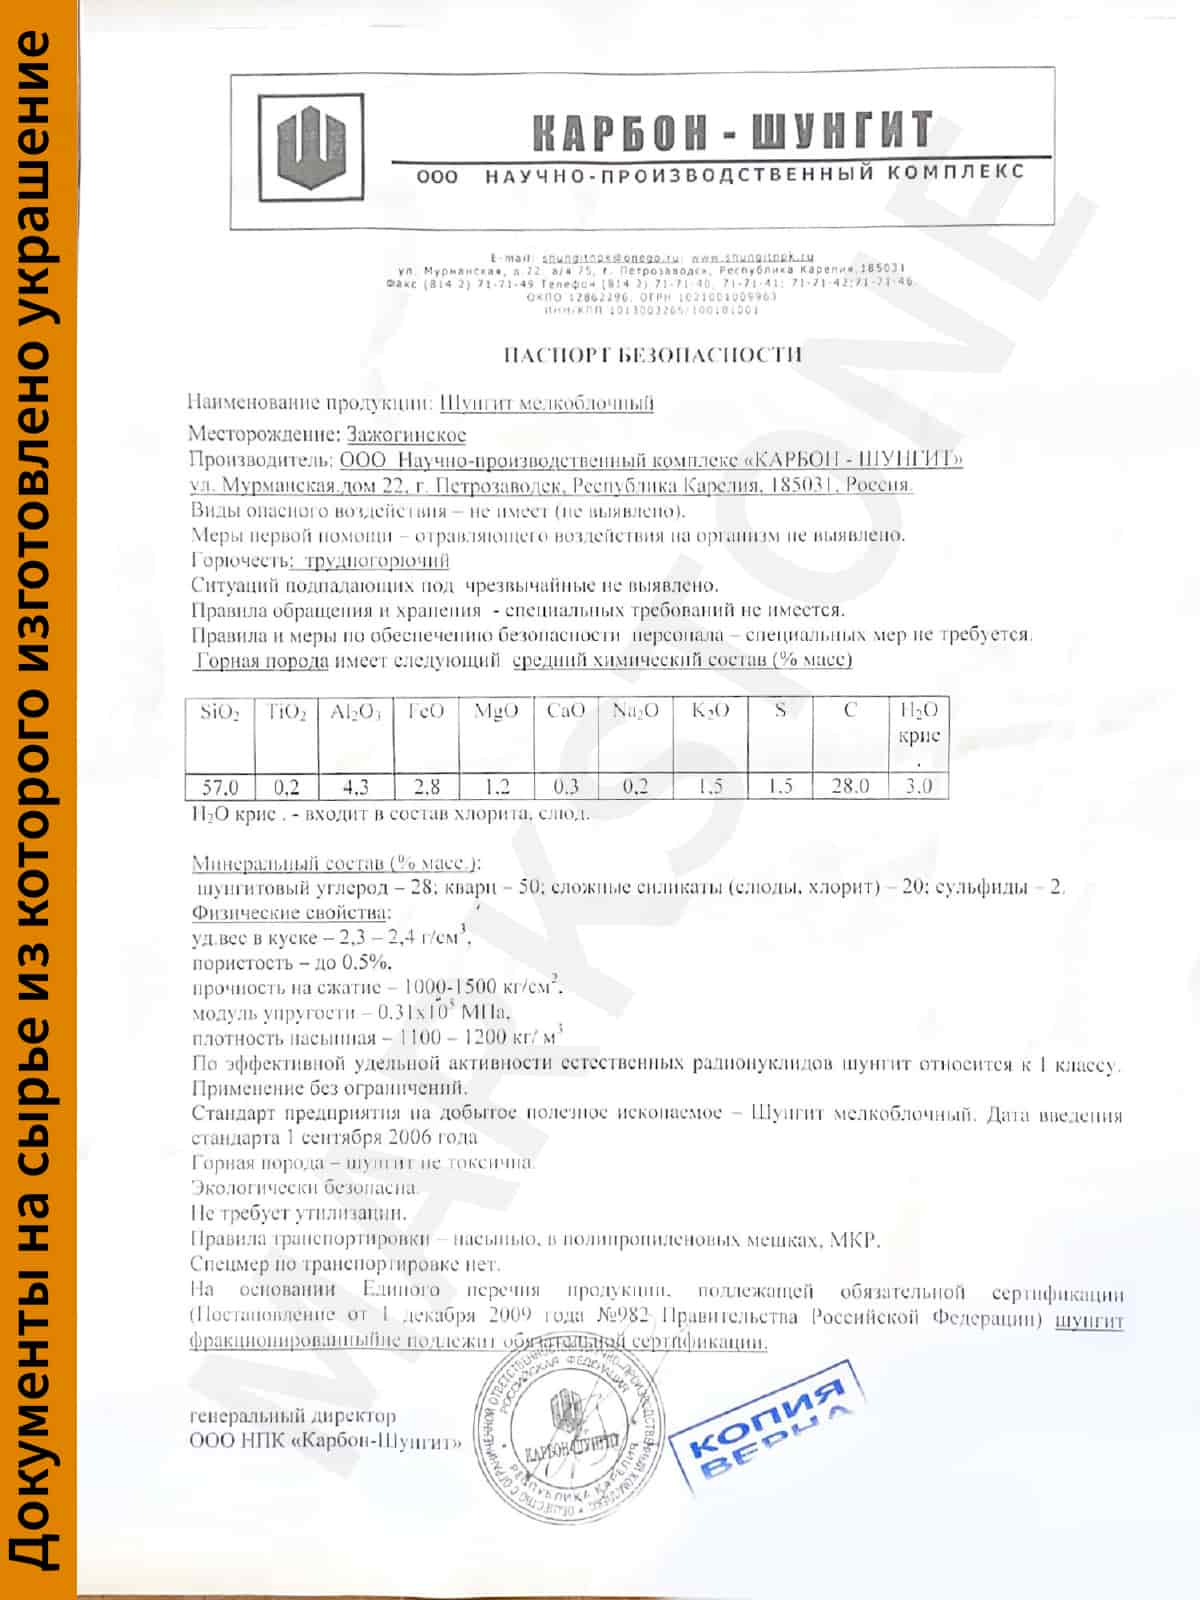 foto-sertifikata-pasport-bezopasnosti-na-kamen-shungit-s-vodyanym-znakom.jpeg